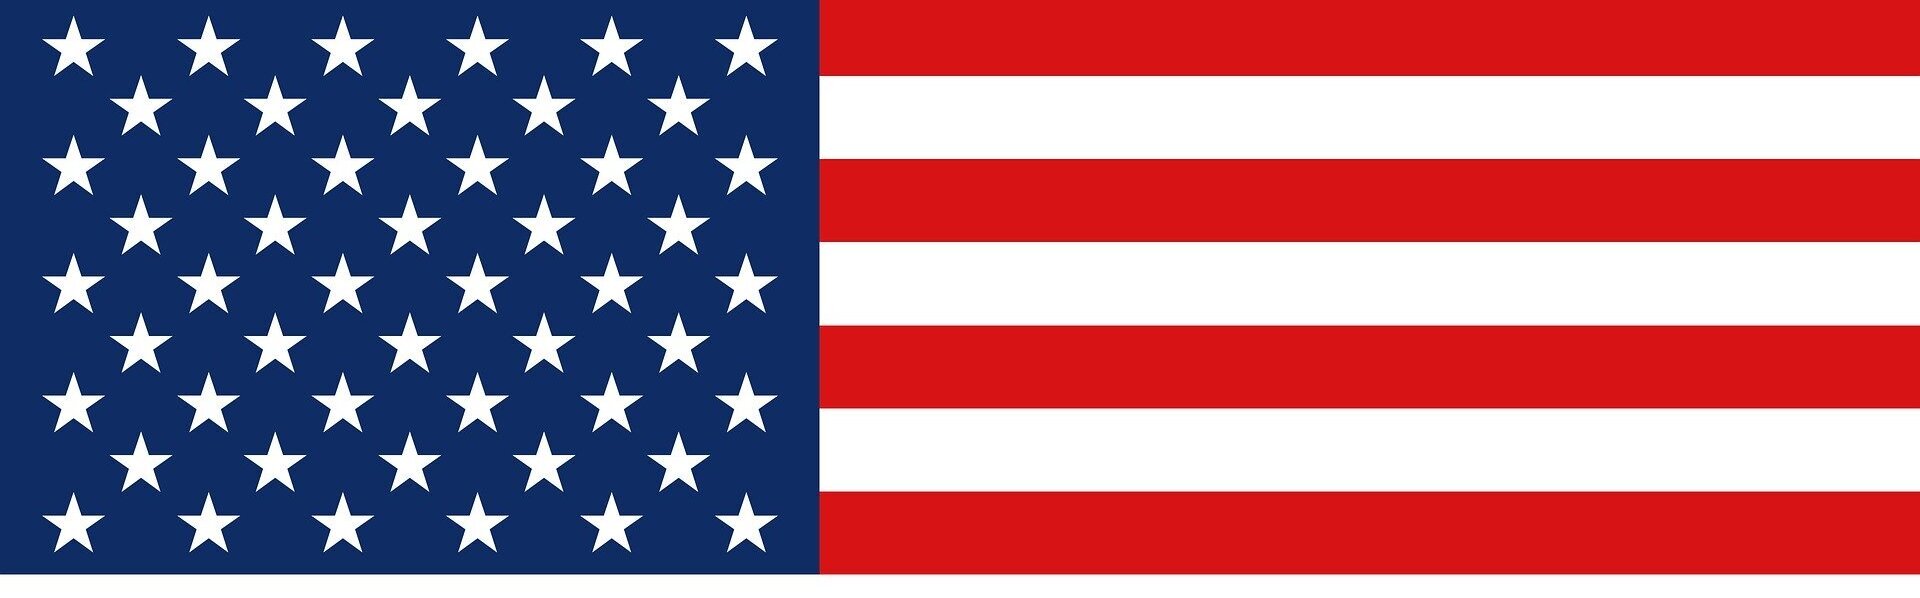 Das Bild zeigt die Flagge der USA